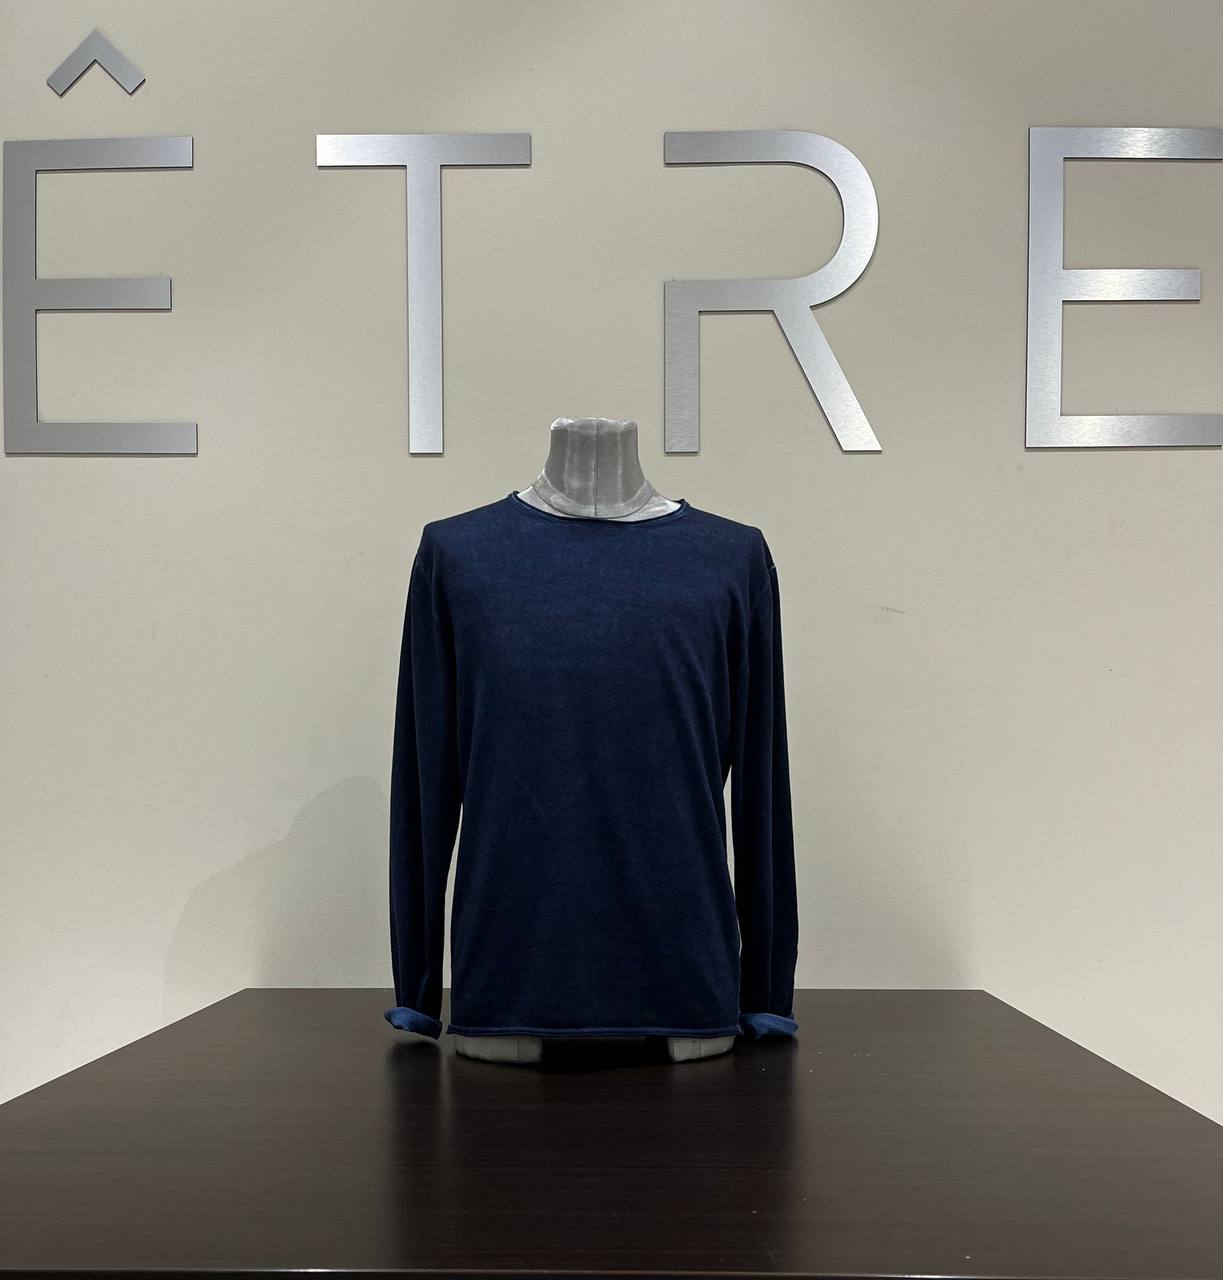 Итальянская одежда, бренд ETRE, арт. 73225756